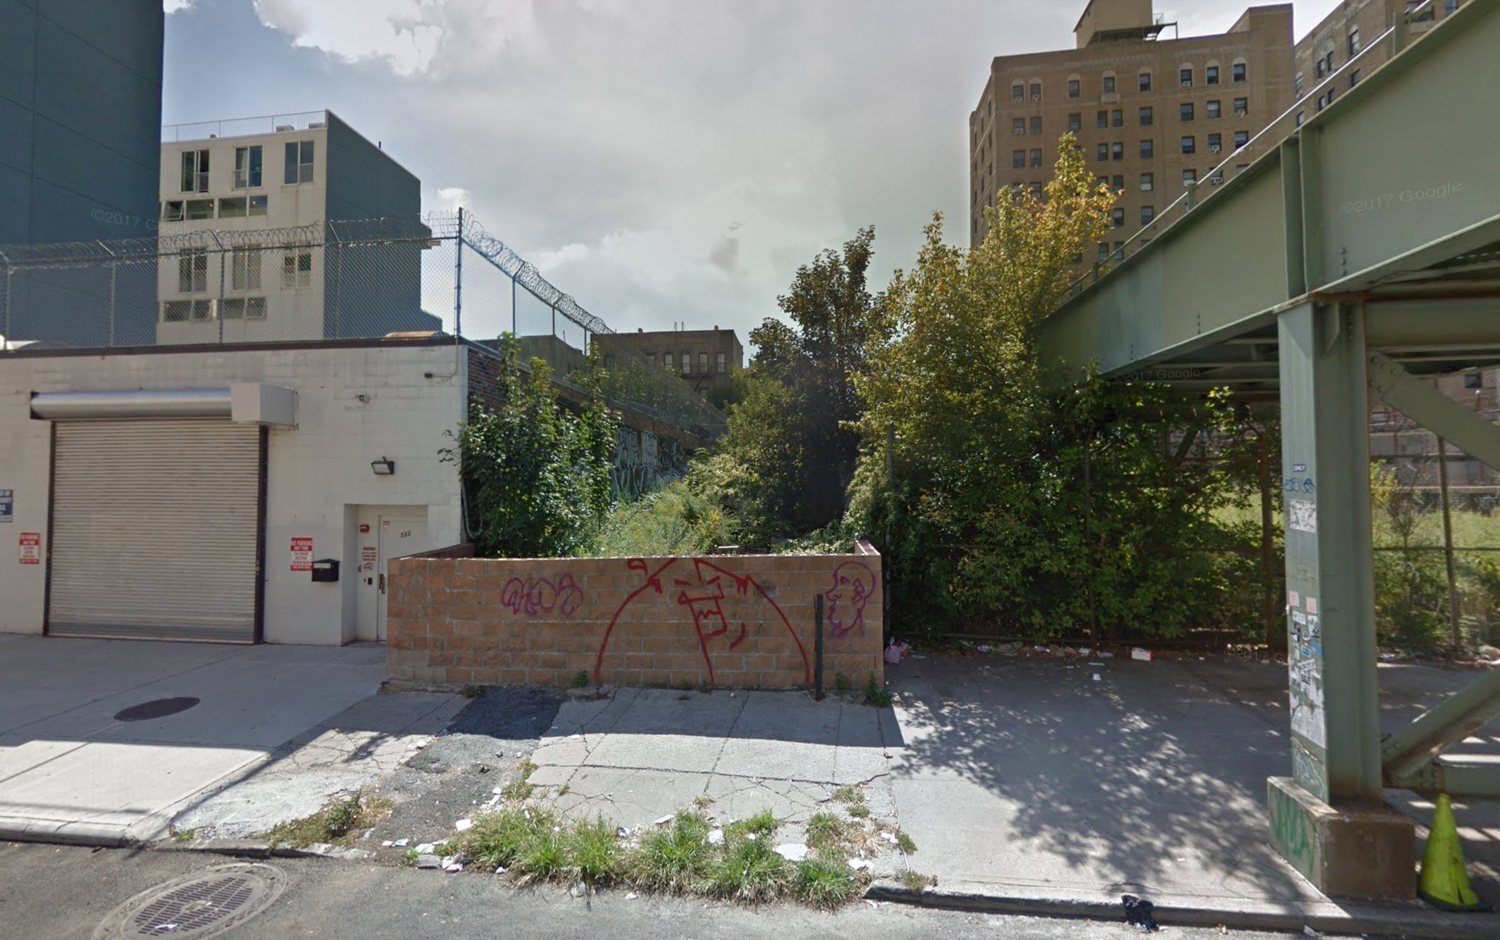 530 St Marks Avenue, via Google Maps